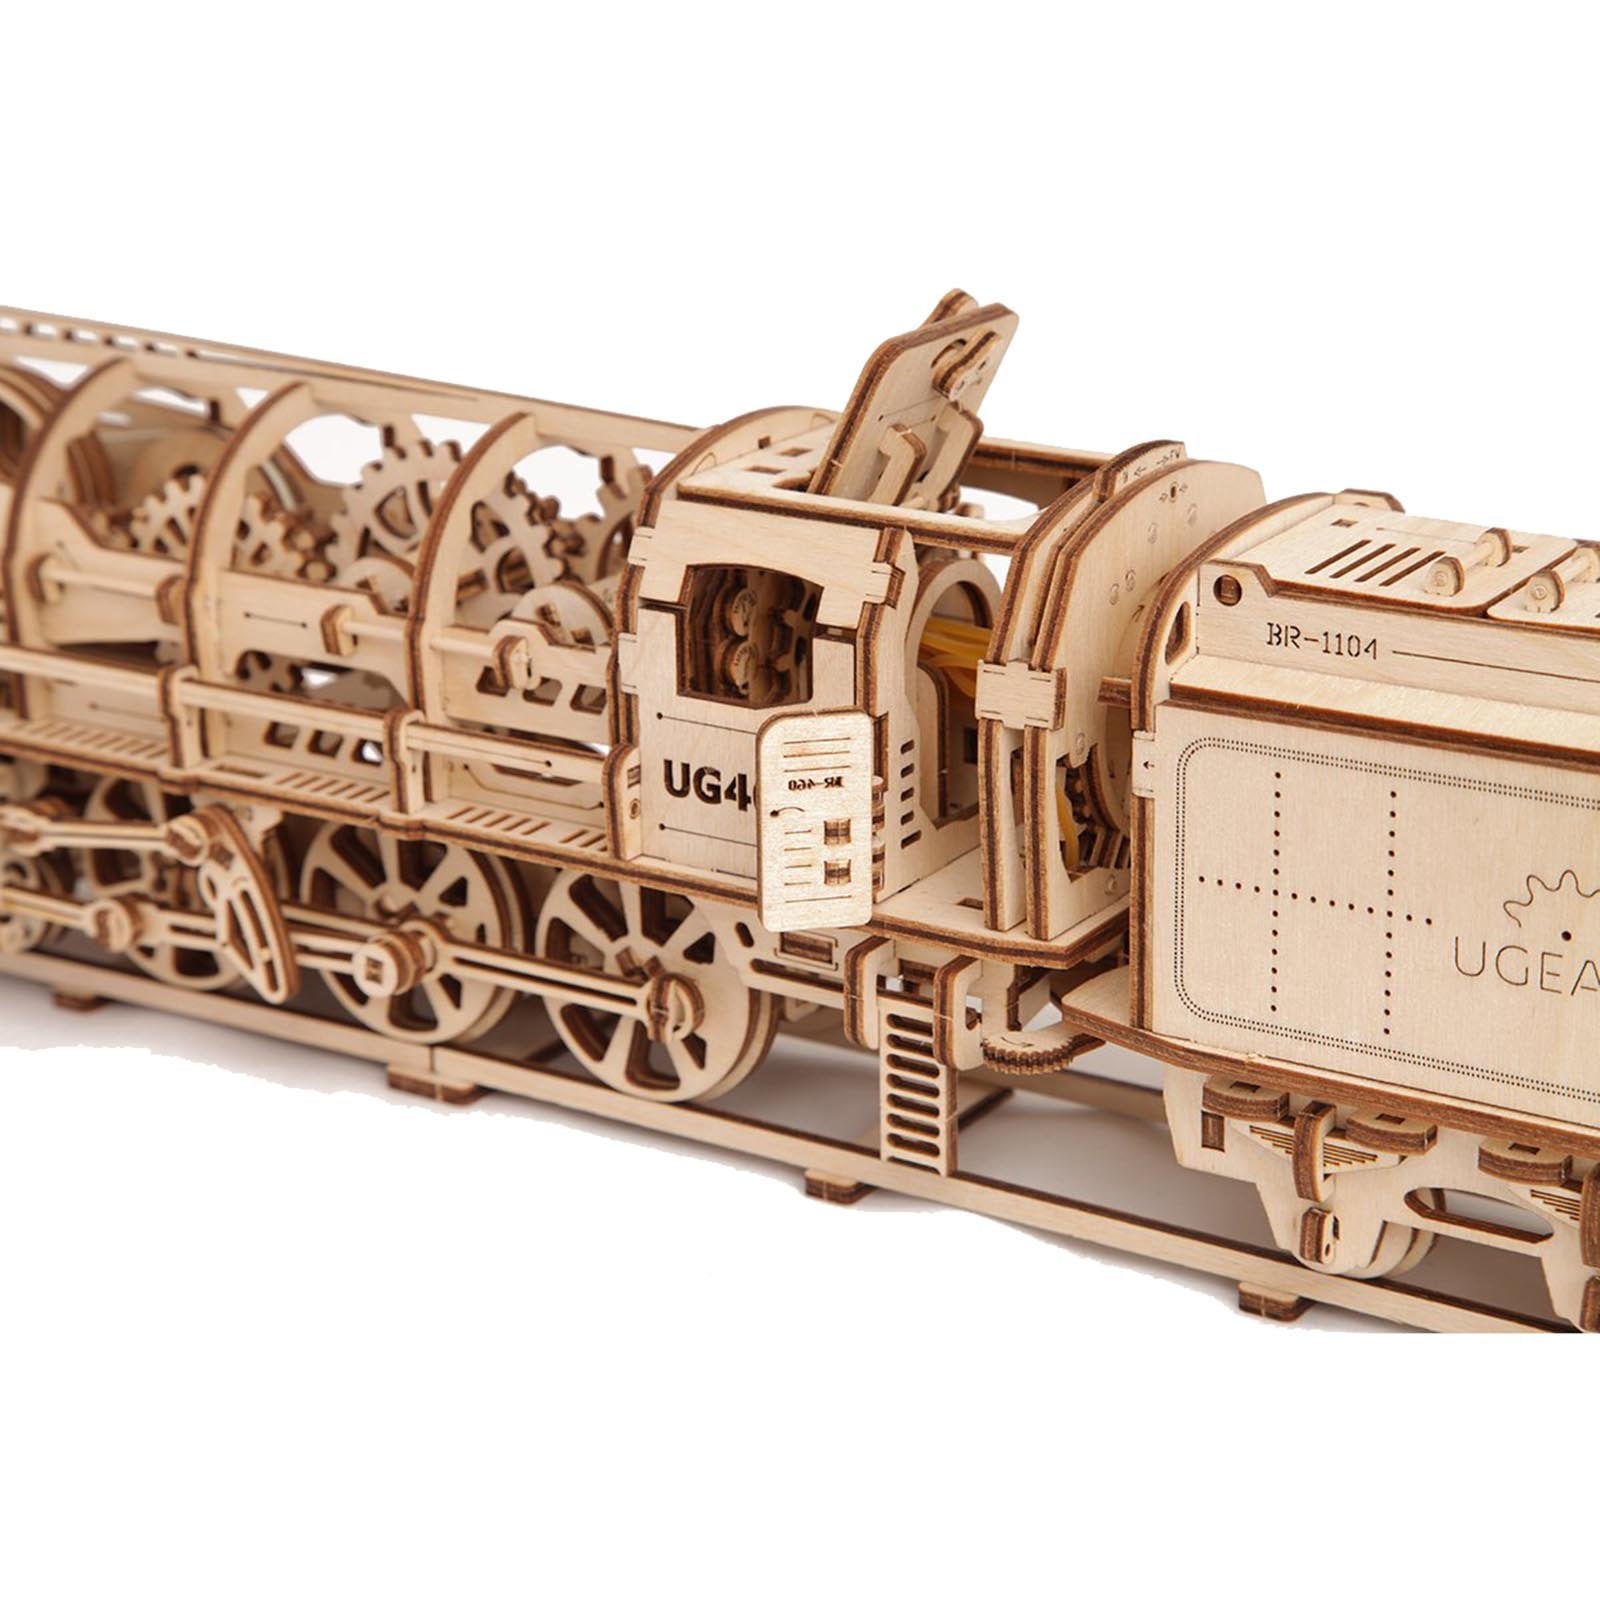 Locomotive 460 UGEARS - Puzzle 3d Mécanique - UGEARS - MODELS